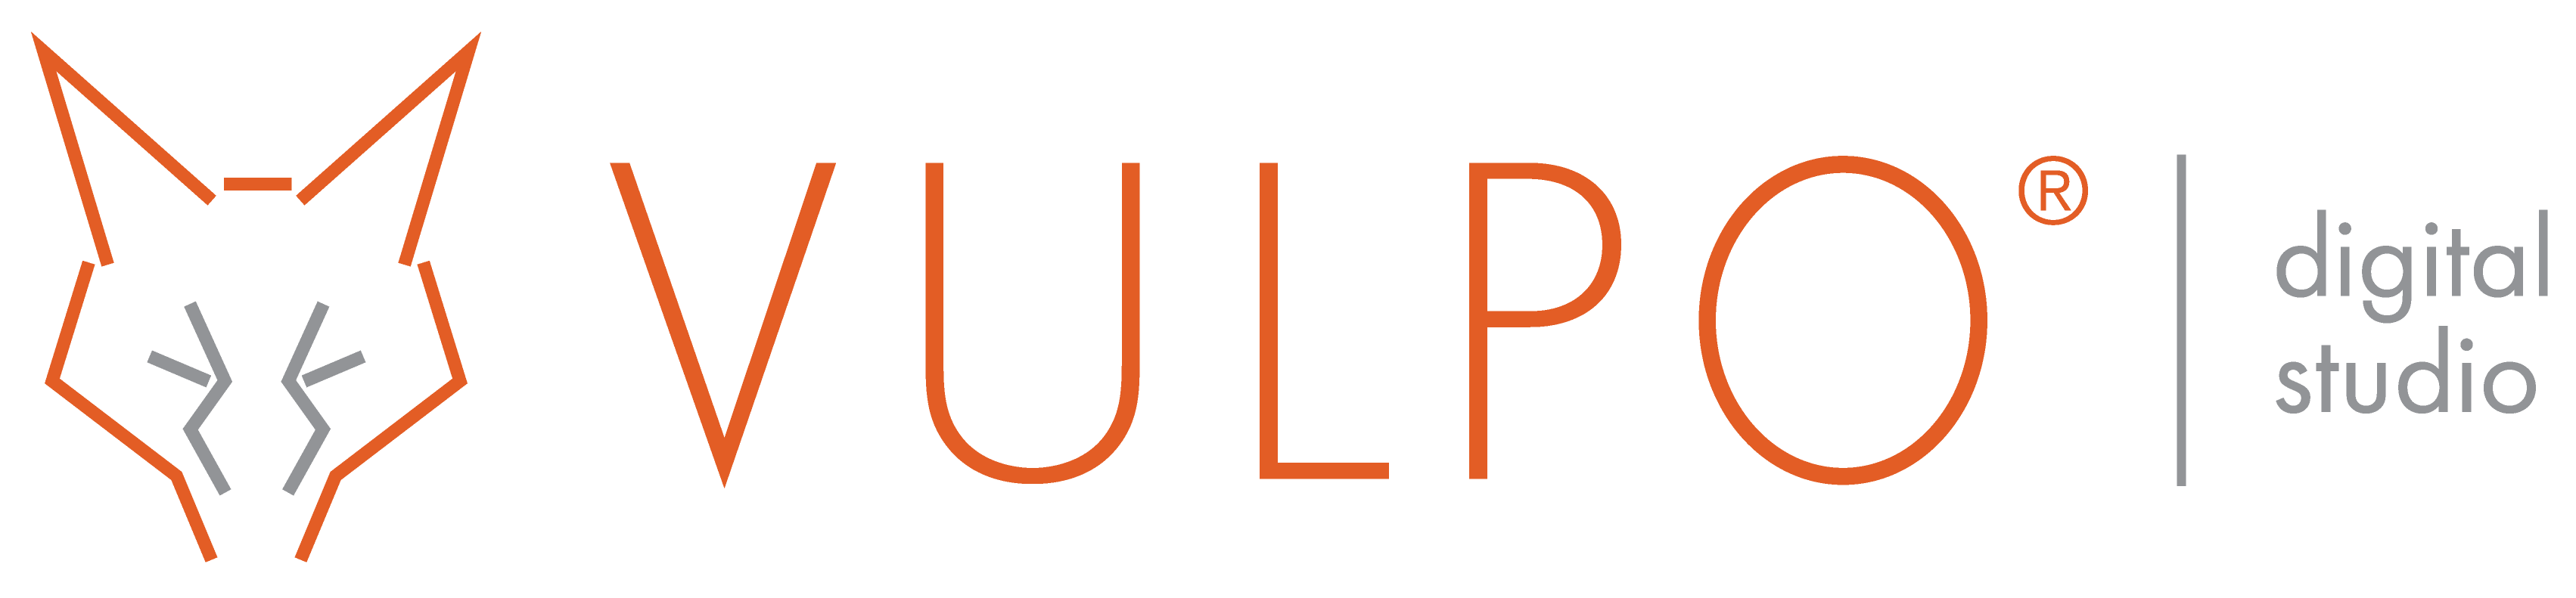 Logo Vulpo - Digital Studio